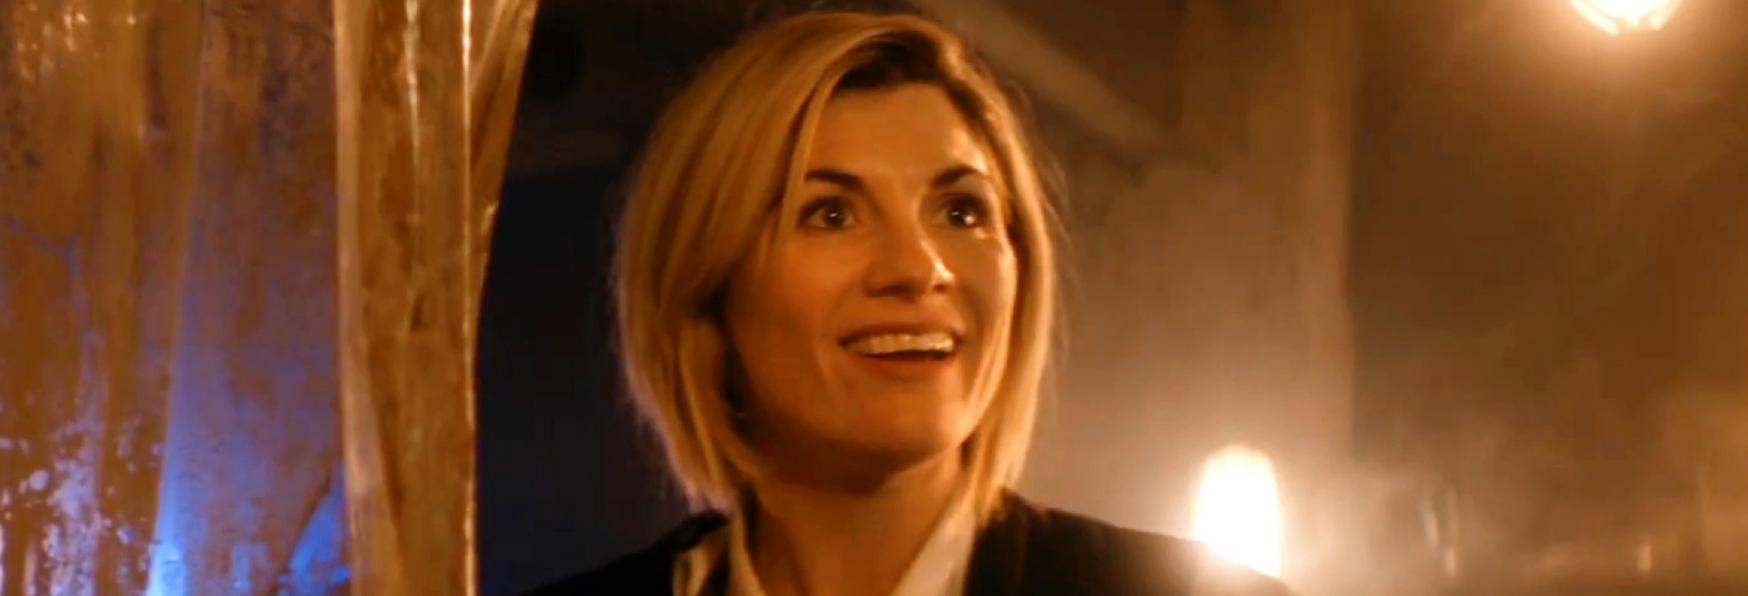 Doctor Who 13: Trailer, Poster e Foto dell'Episodio Speciale in onda a Capodanno